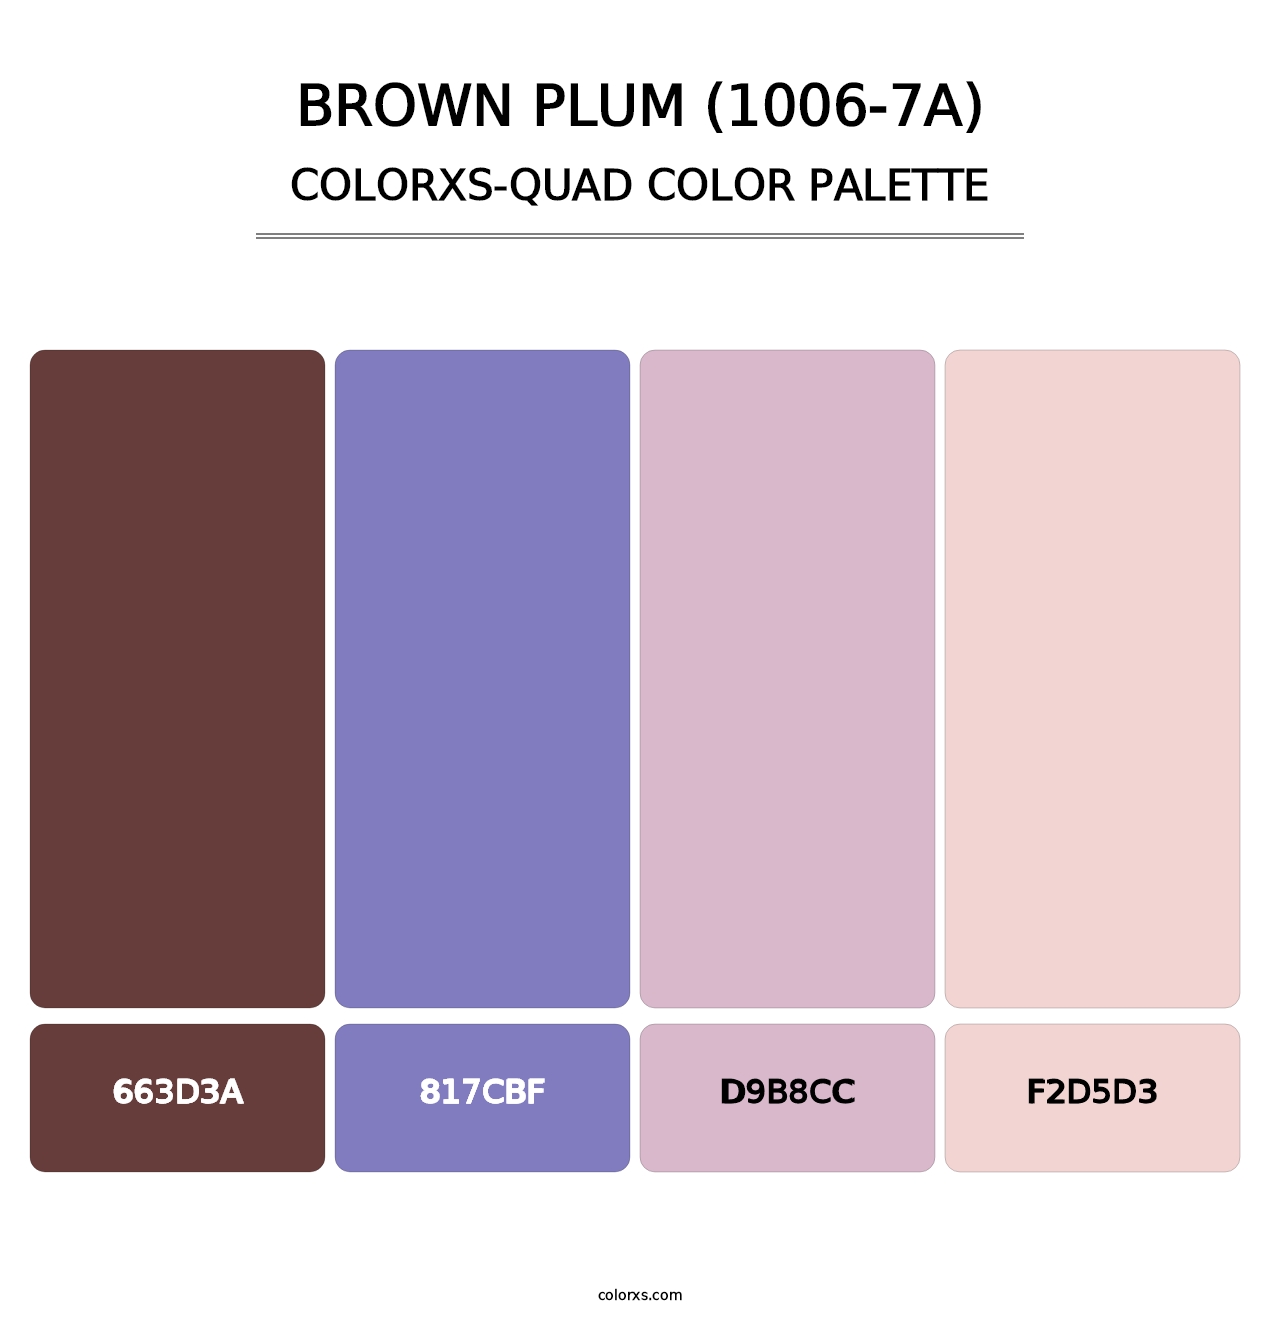 Brown Plum (1006-7A) - Colorxs Quad Palette